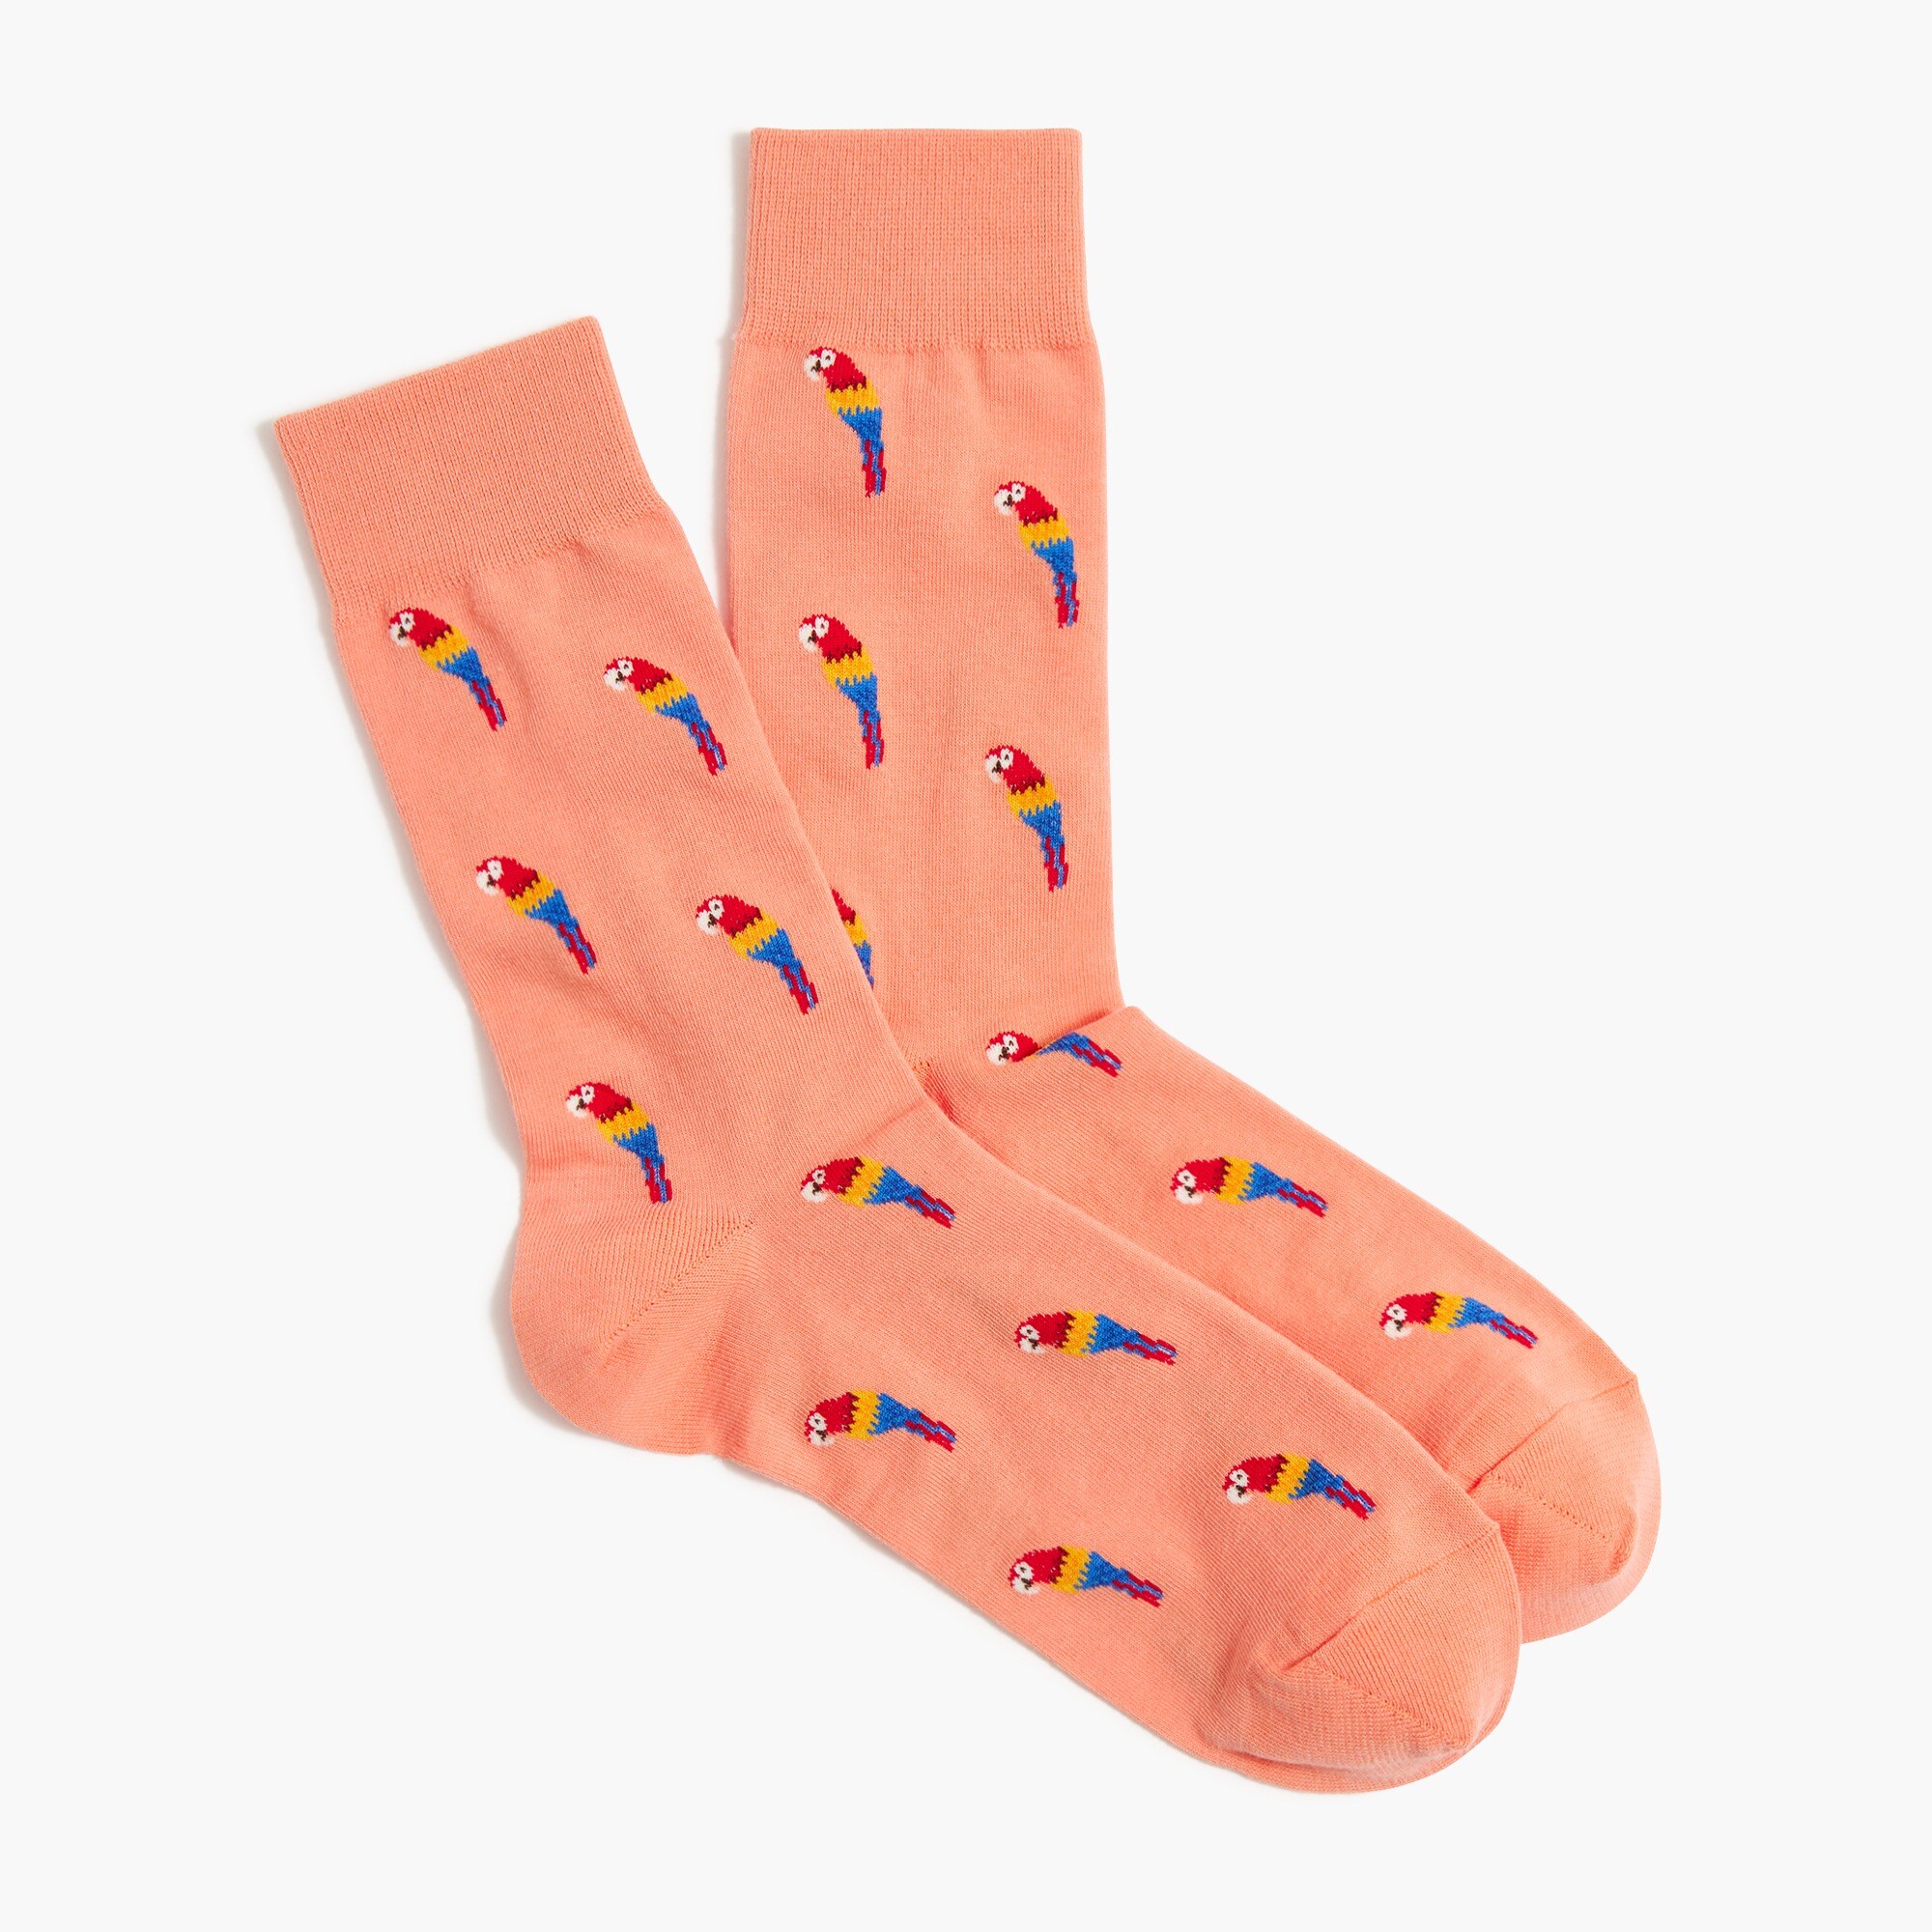  Parrot socks